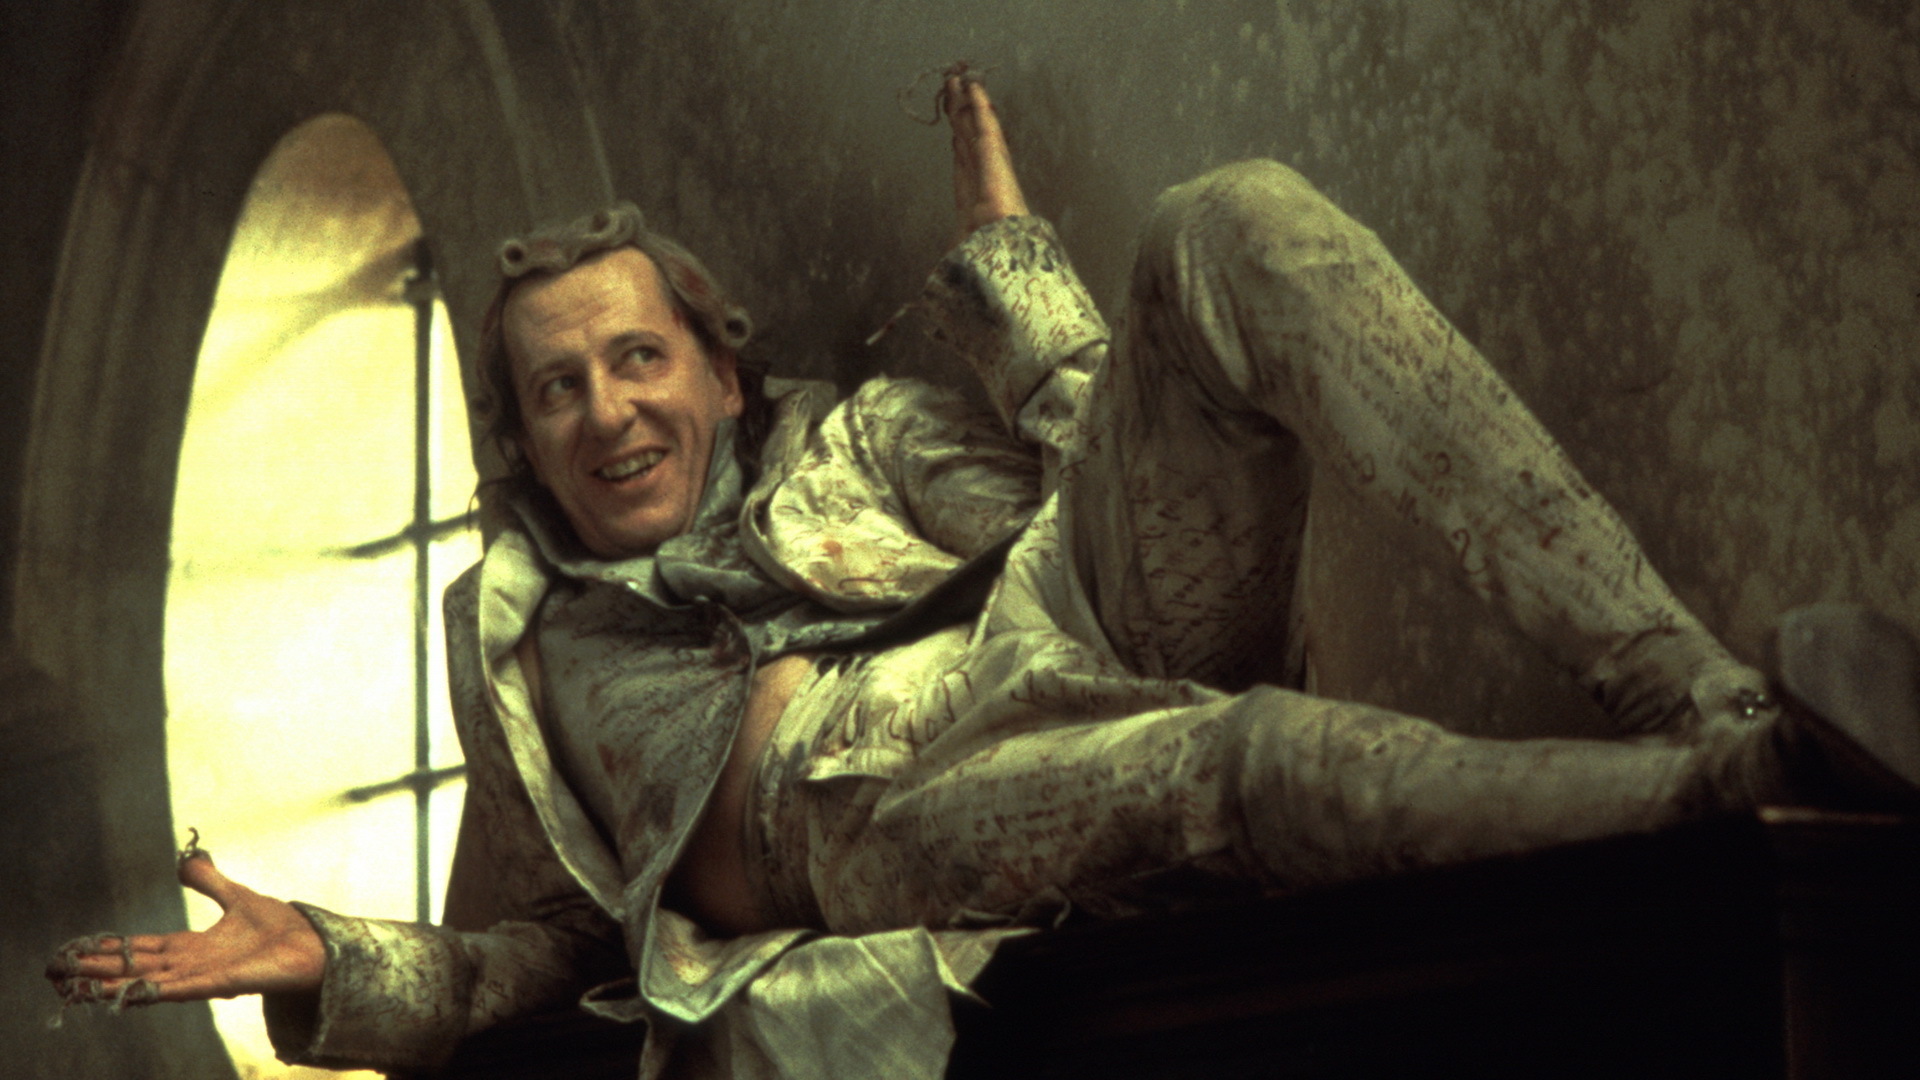 El actor Geoffrey Rush personificando al Marqués de Sade en la película "Letras Prohibidas" (2000).